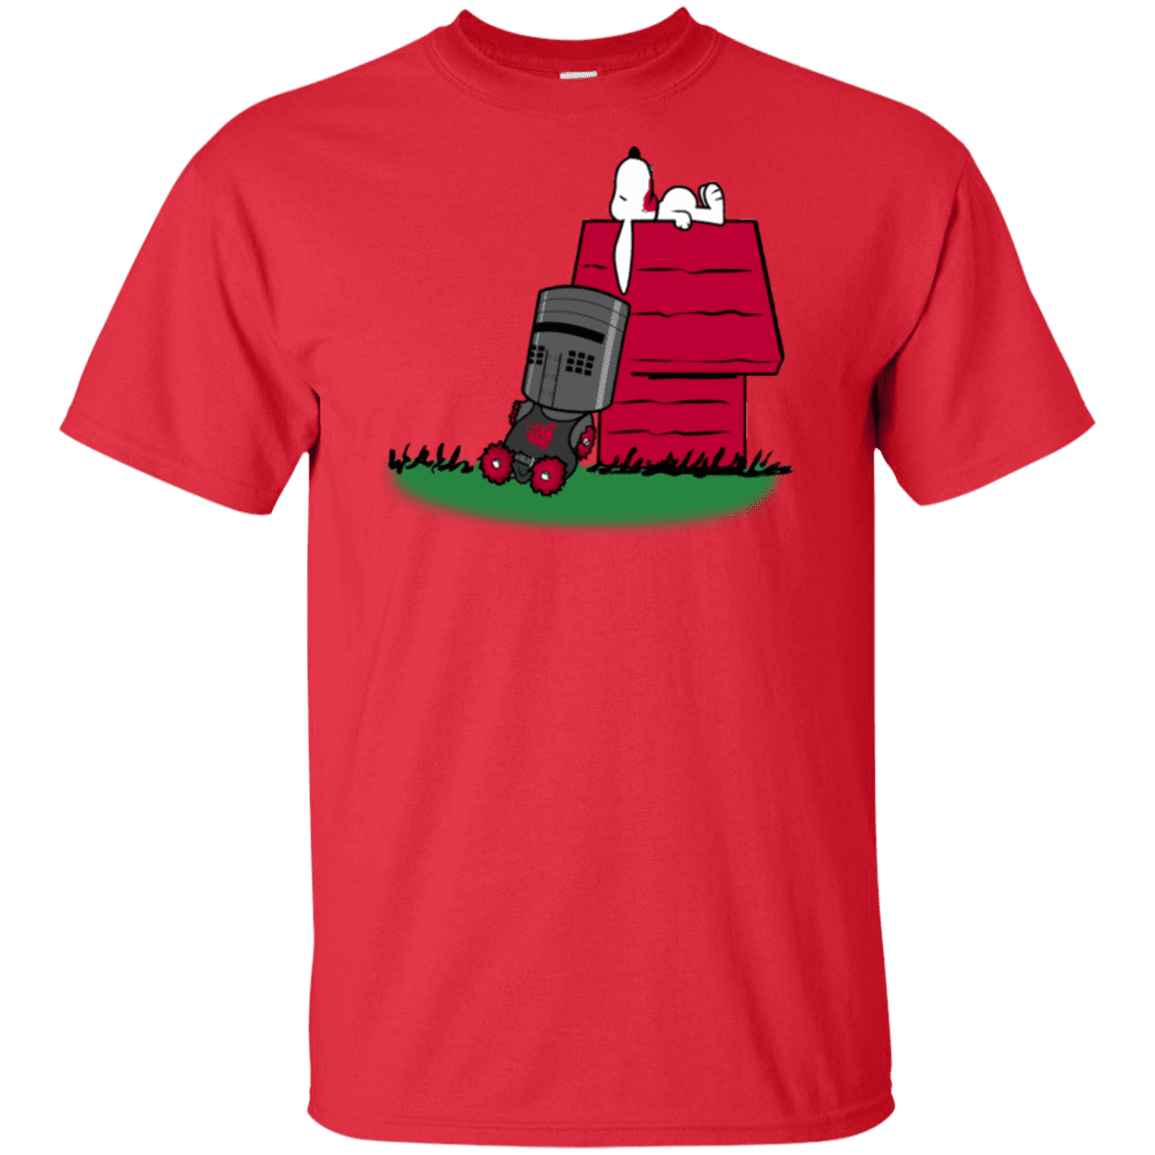 T-Shirts Red / XLT SNOOPYTHON Tall T-Shirt